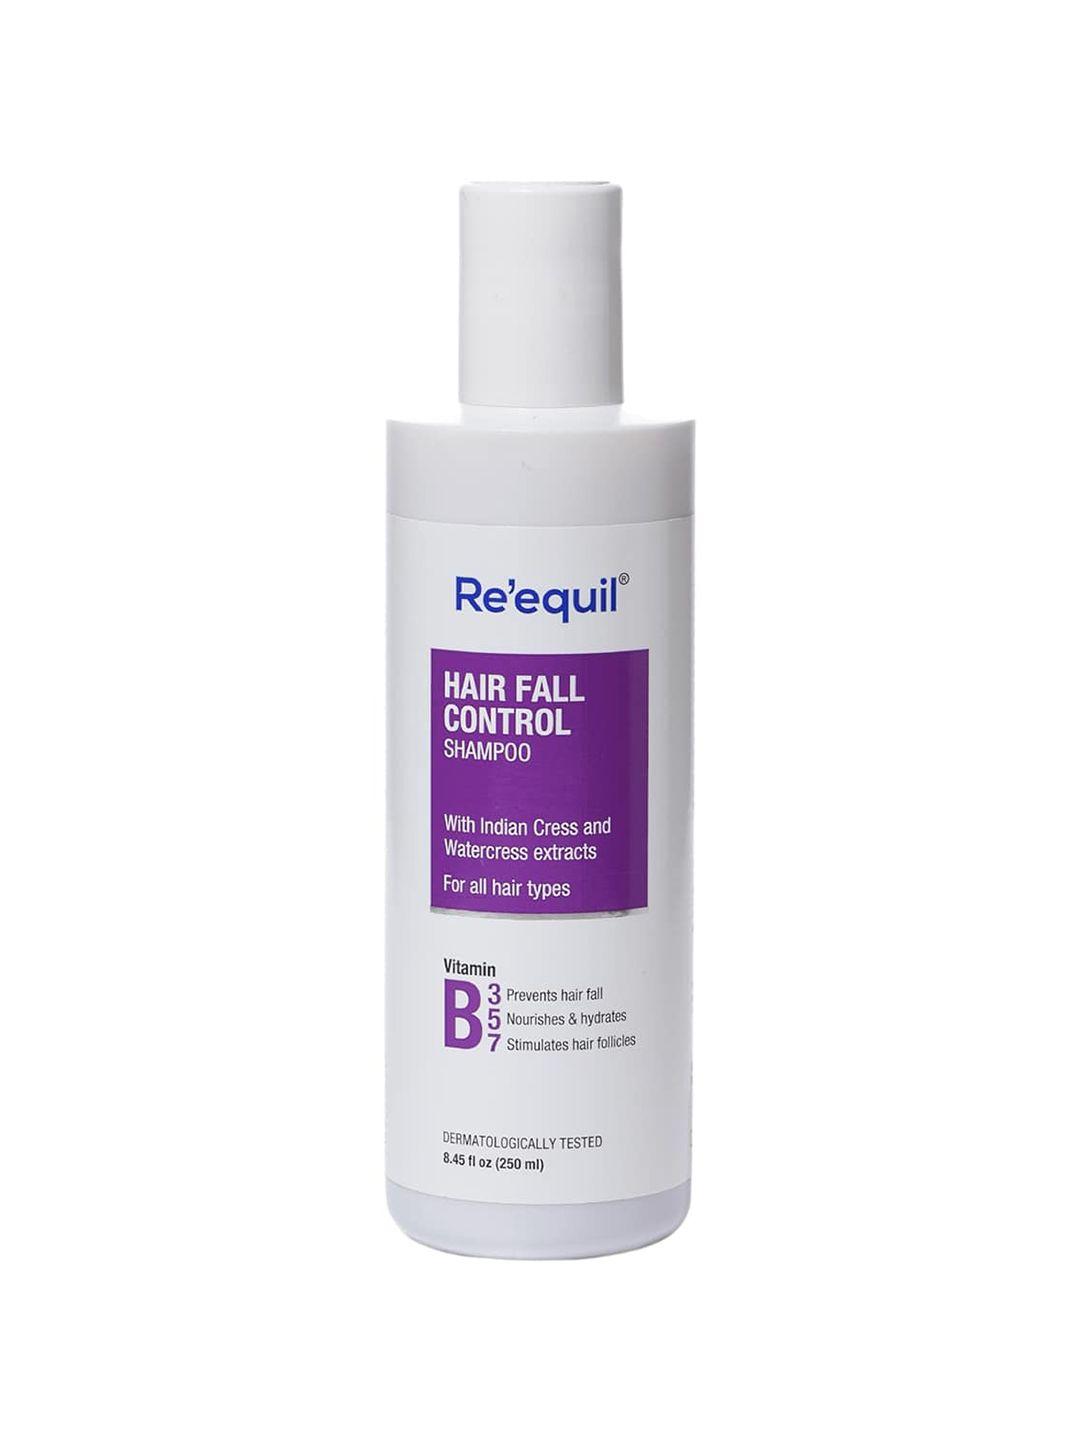 reequil hair fall control shampoo with vitamin b3 & b5 & b7 250 ml